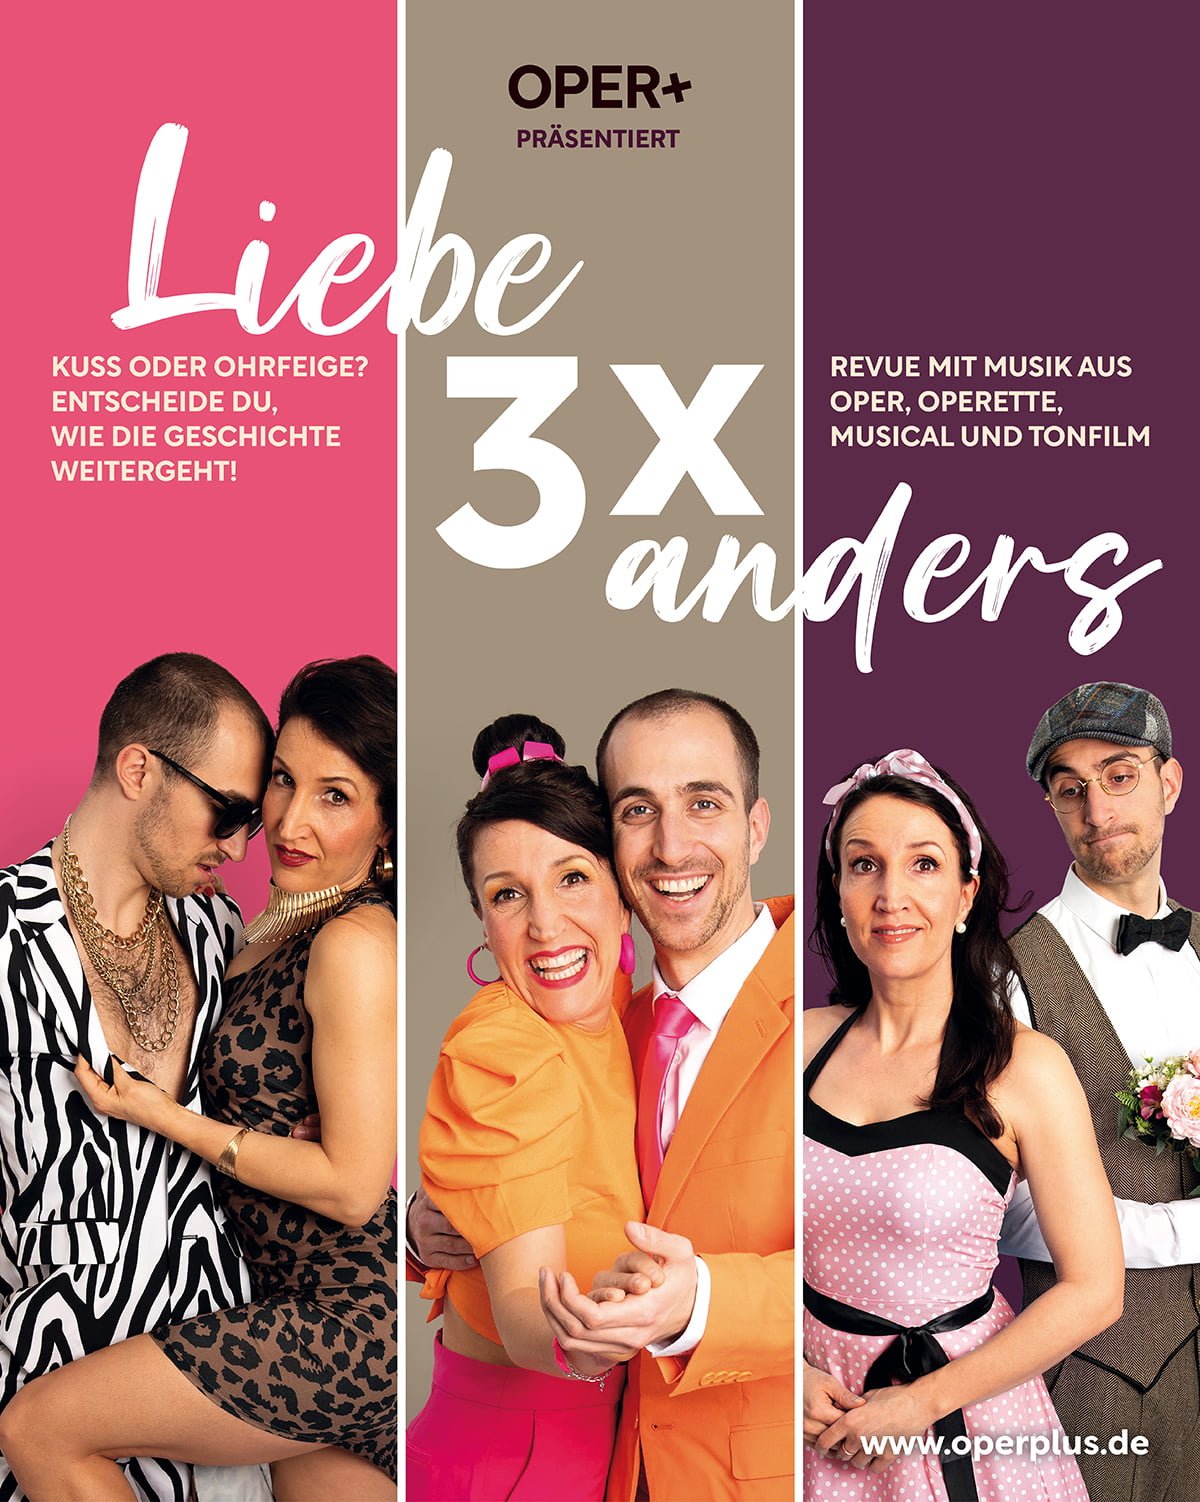 Liebe 3x anders ist ein Mitentscheide-Theater, in dem der Zuschauer die Weichen stellt für den Ausgang des bunten Musikmix aus Oper, Operette, Musical und Tonfilm.